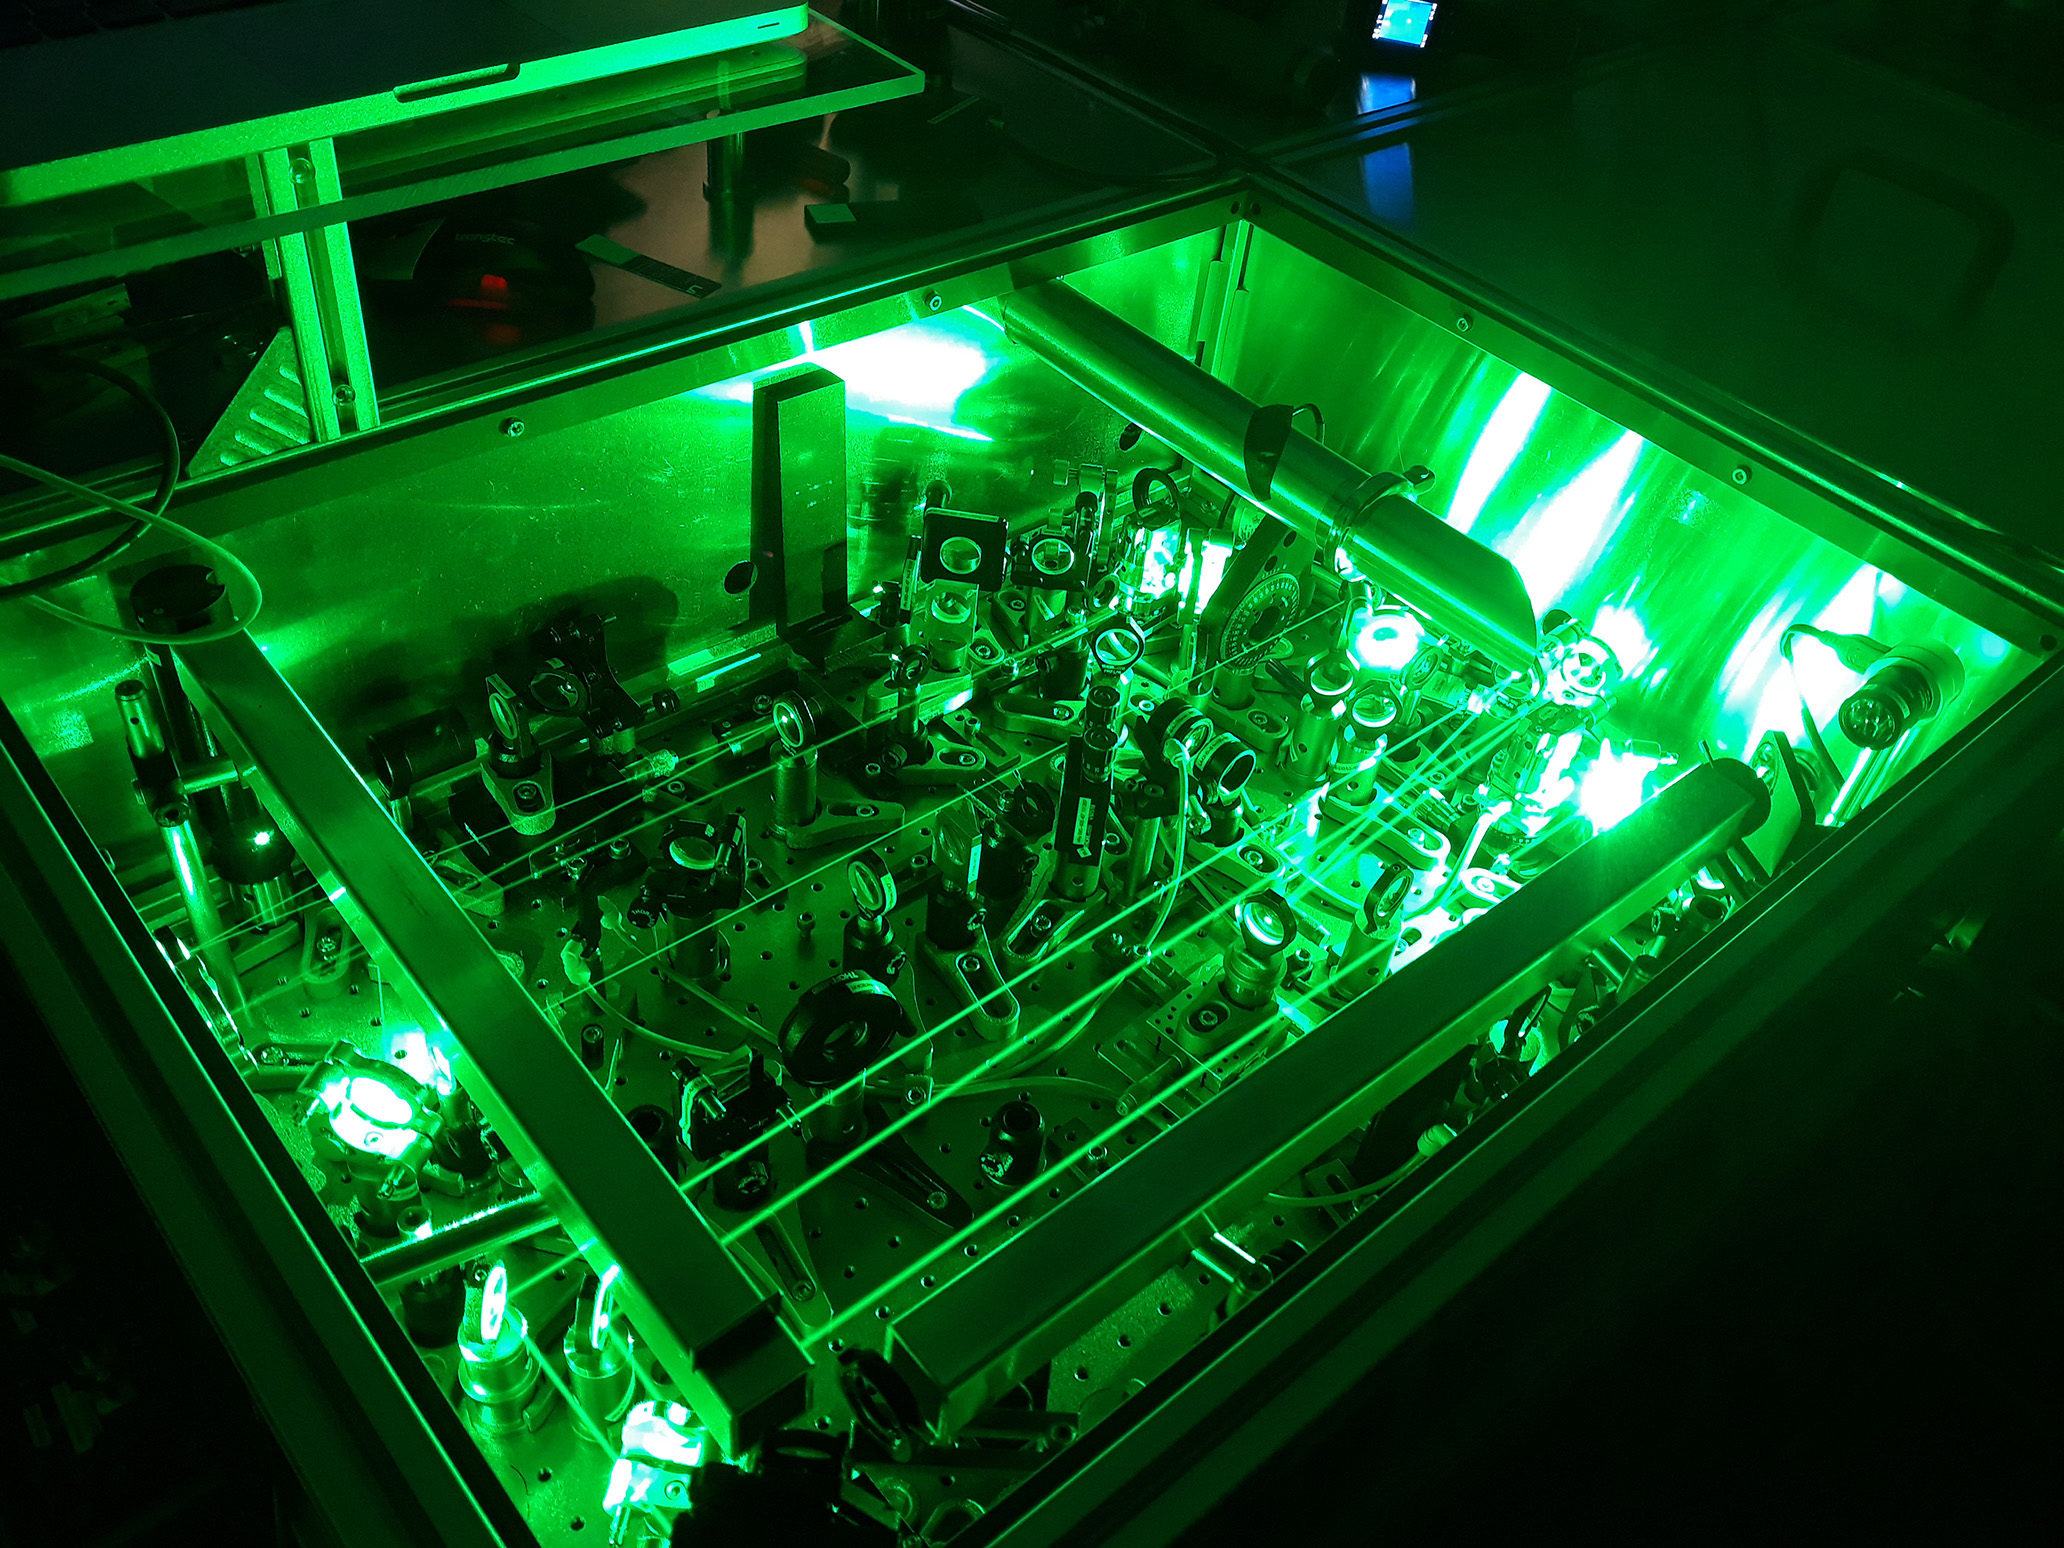 Green laser beam passing through optical setup